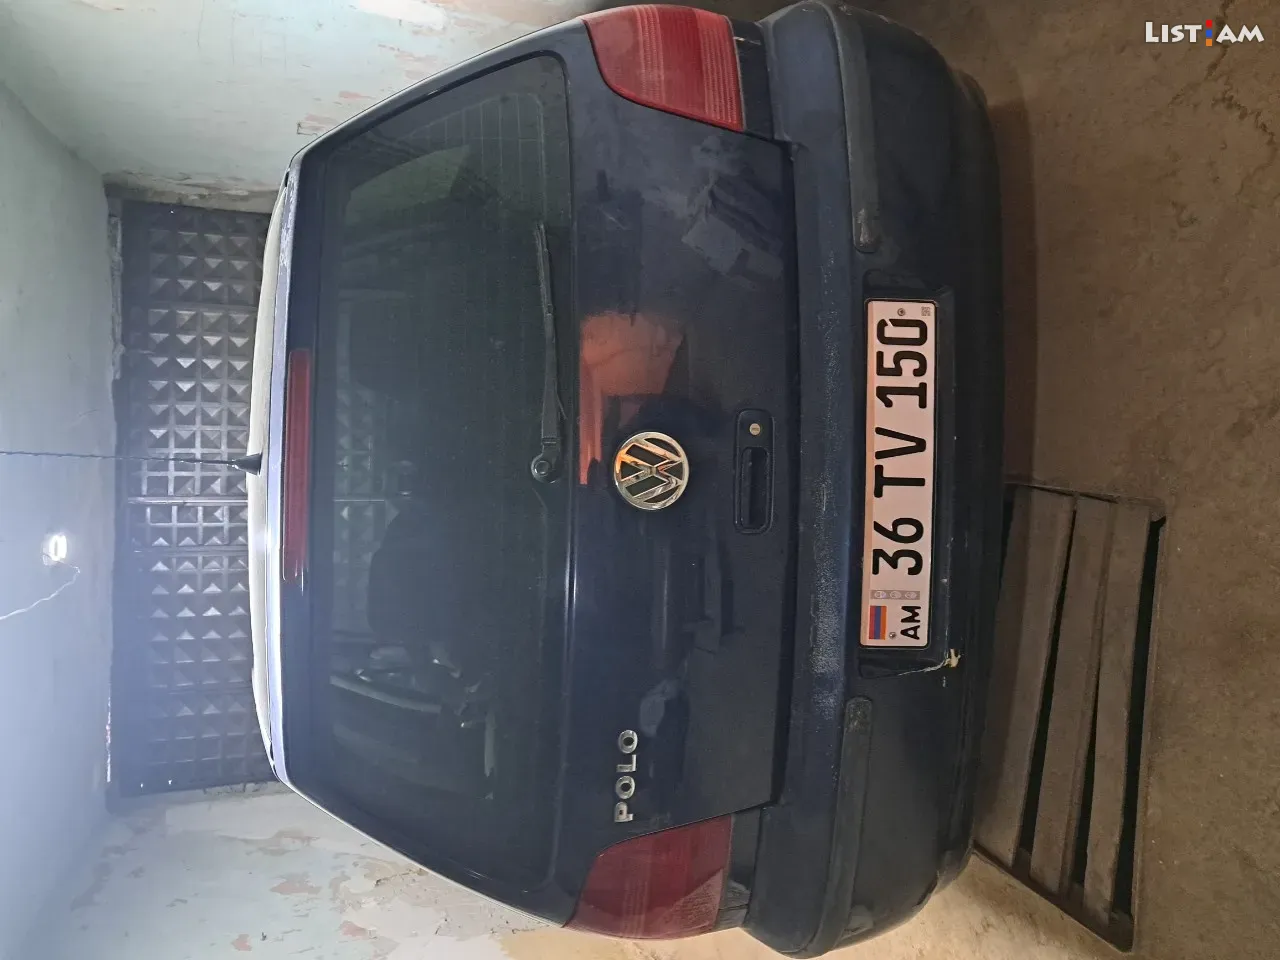 Volkswagen Polo հետչբեք, 1.4 լ, 2000 թ. - Ավտոմեքենաներ - List.am